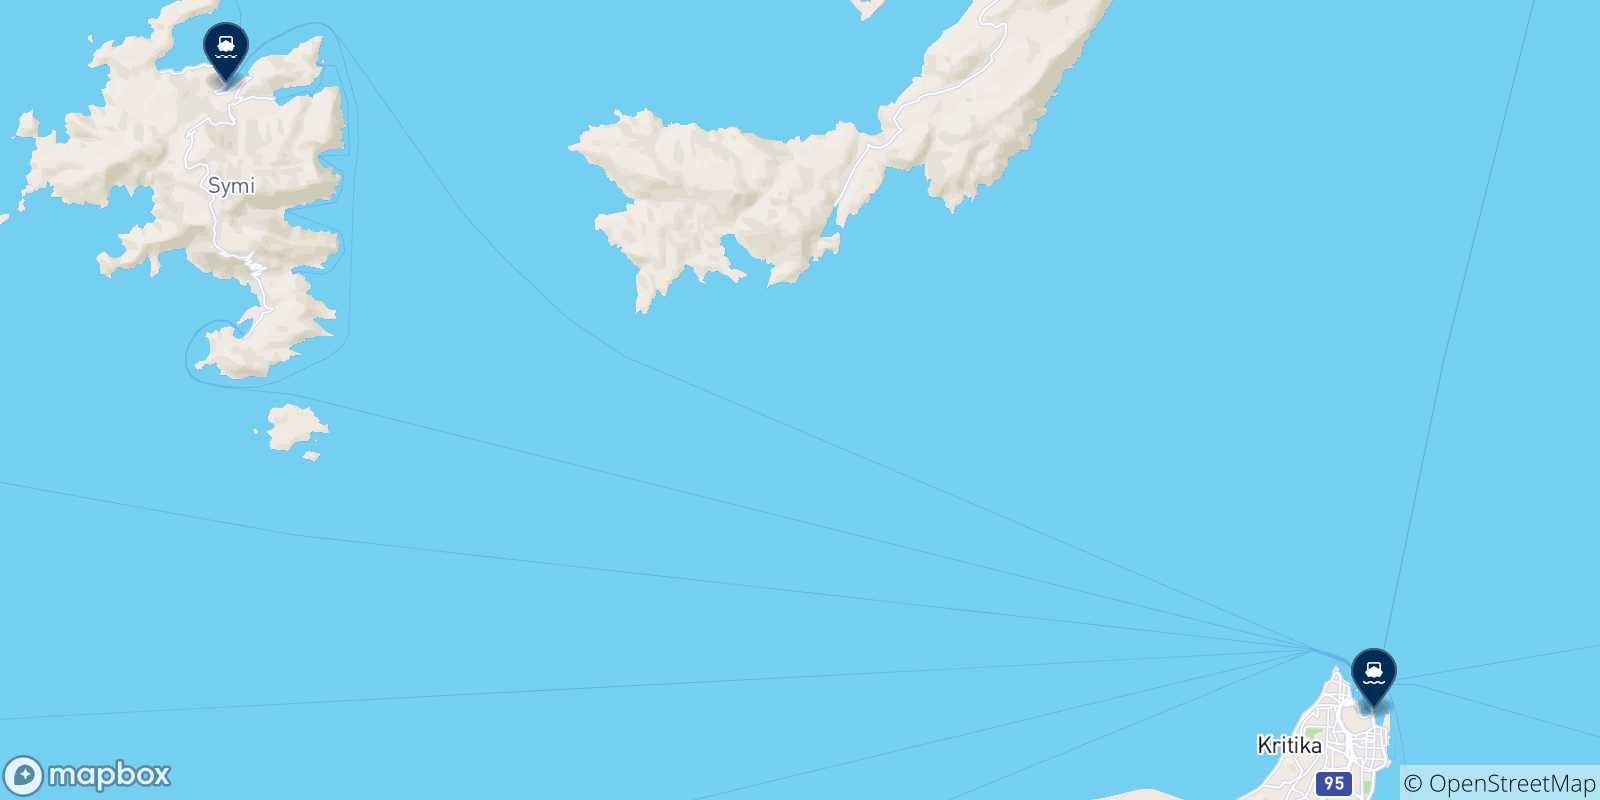 Mappa delle possibili rotte tra Datca e la Grecia